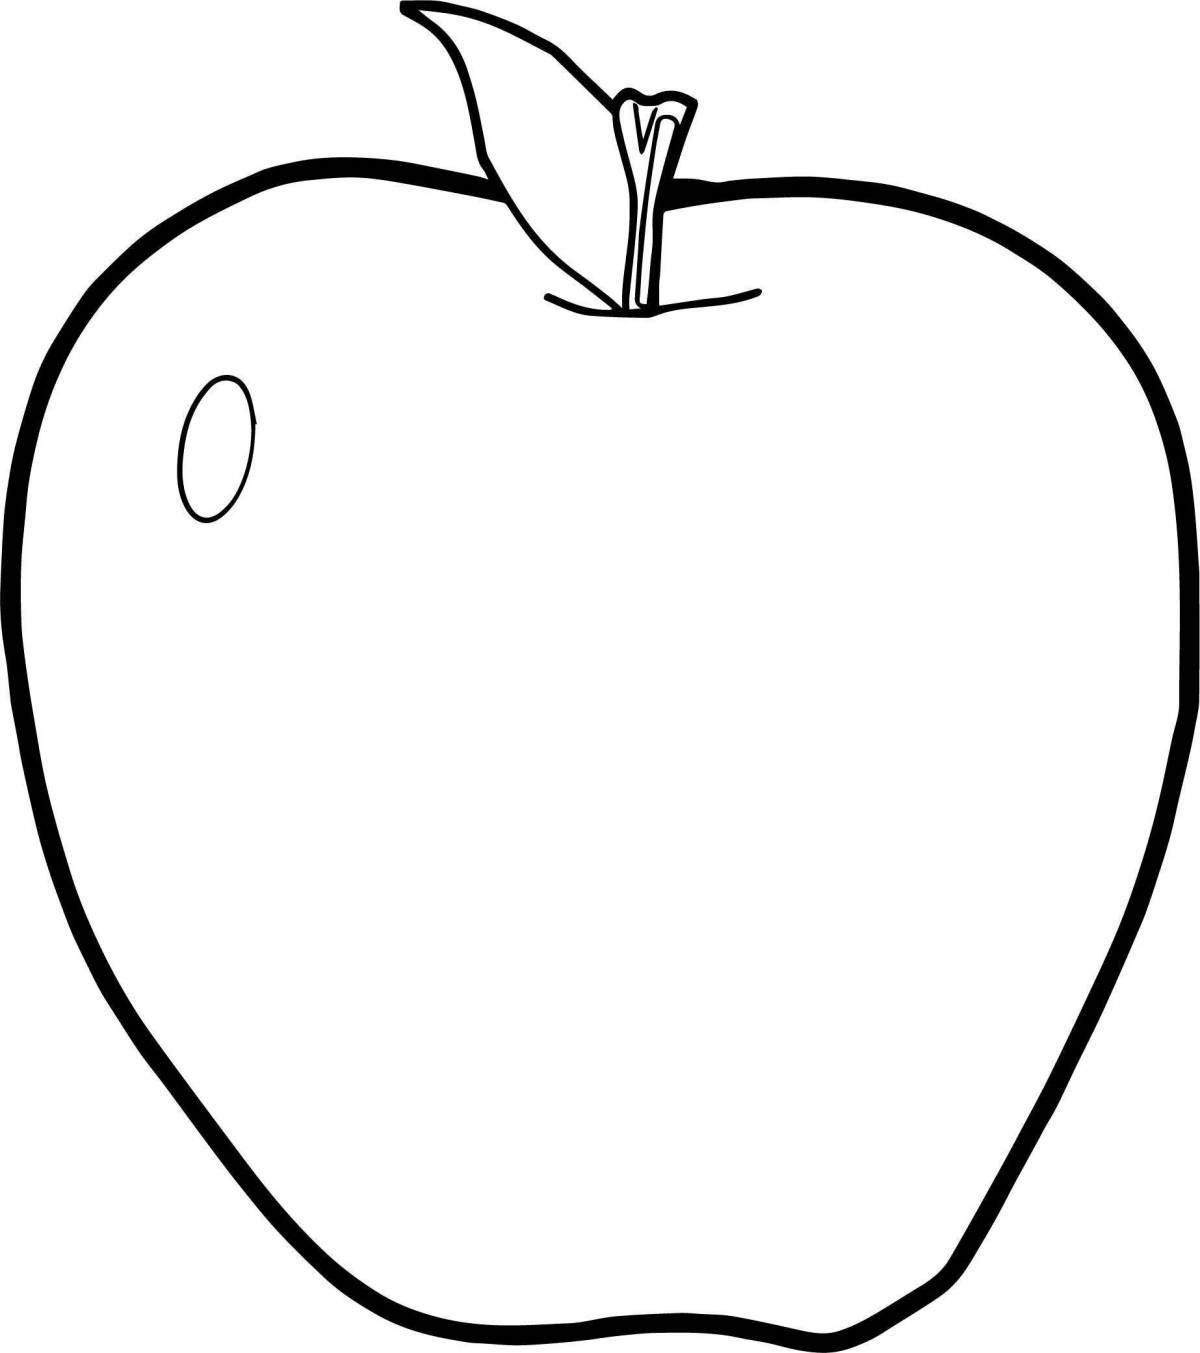 Увлекательная раскраска apple для детей